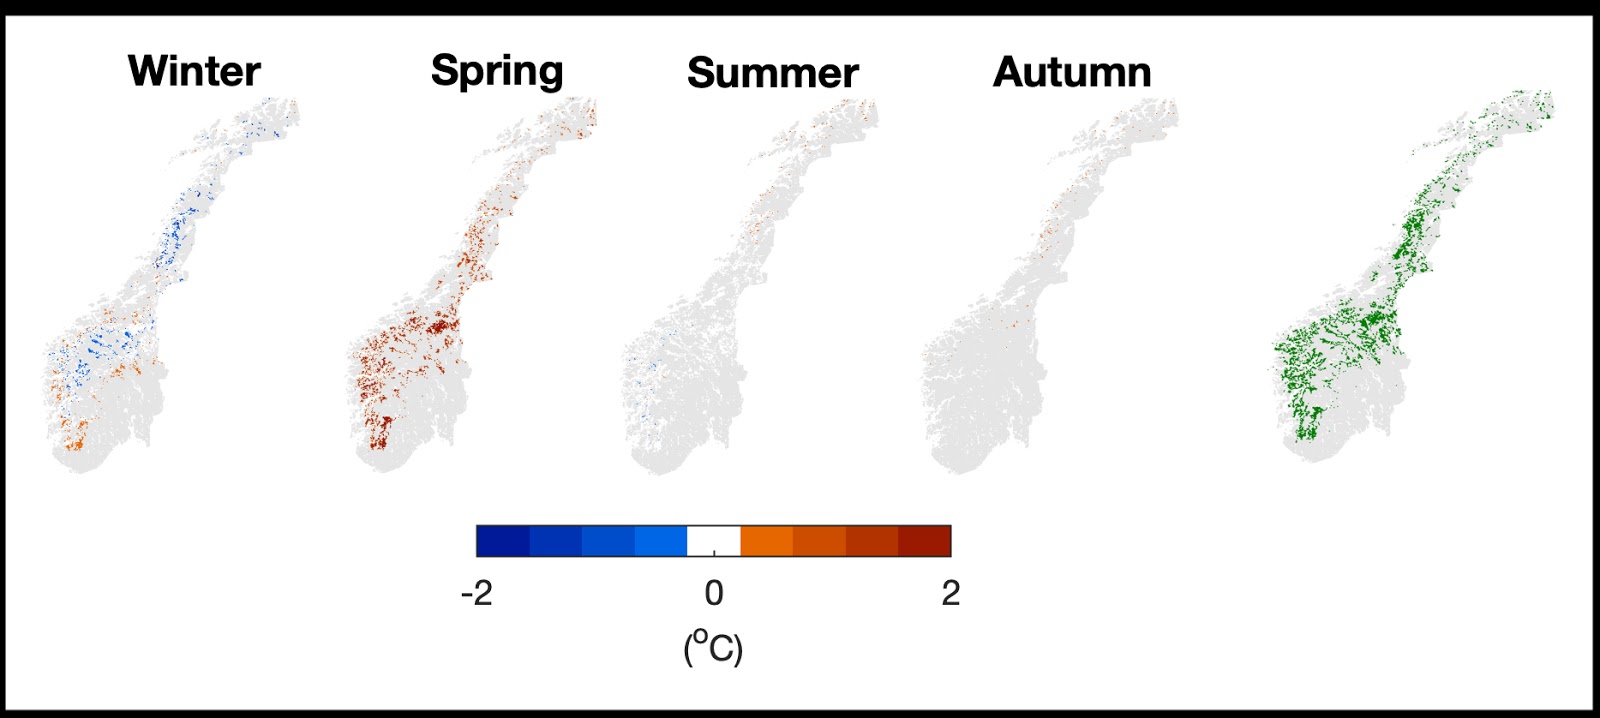 Skogplanting i Norge kan lokalt øke lufttemperaturer om våren med så mye som 1 grad. Andre seasjoner har bare litt endringer. Illustrasjon på høyre viser områder med skogplanting i model.